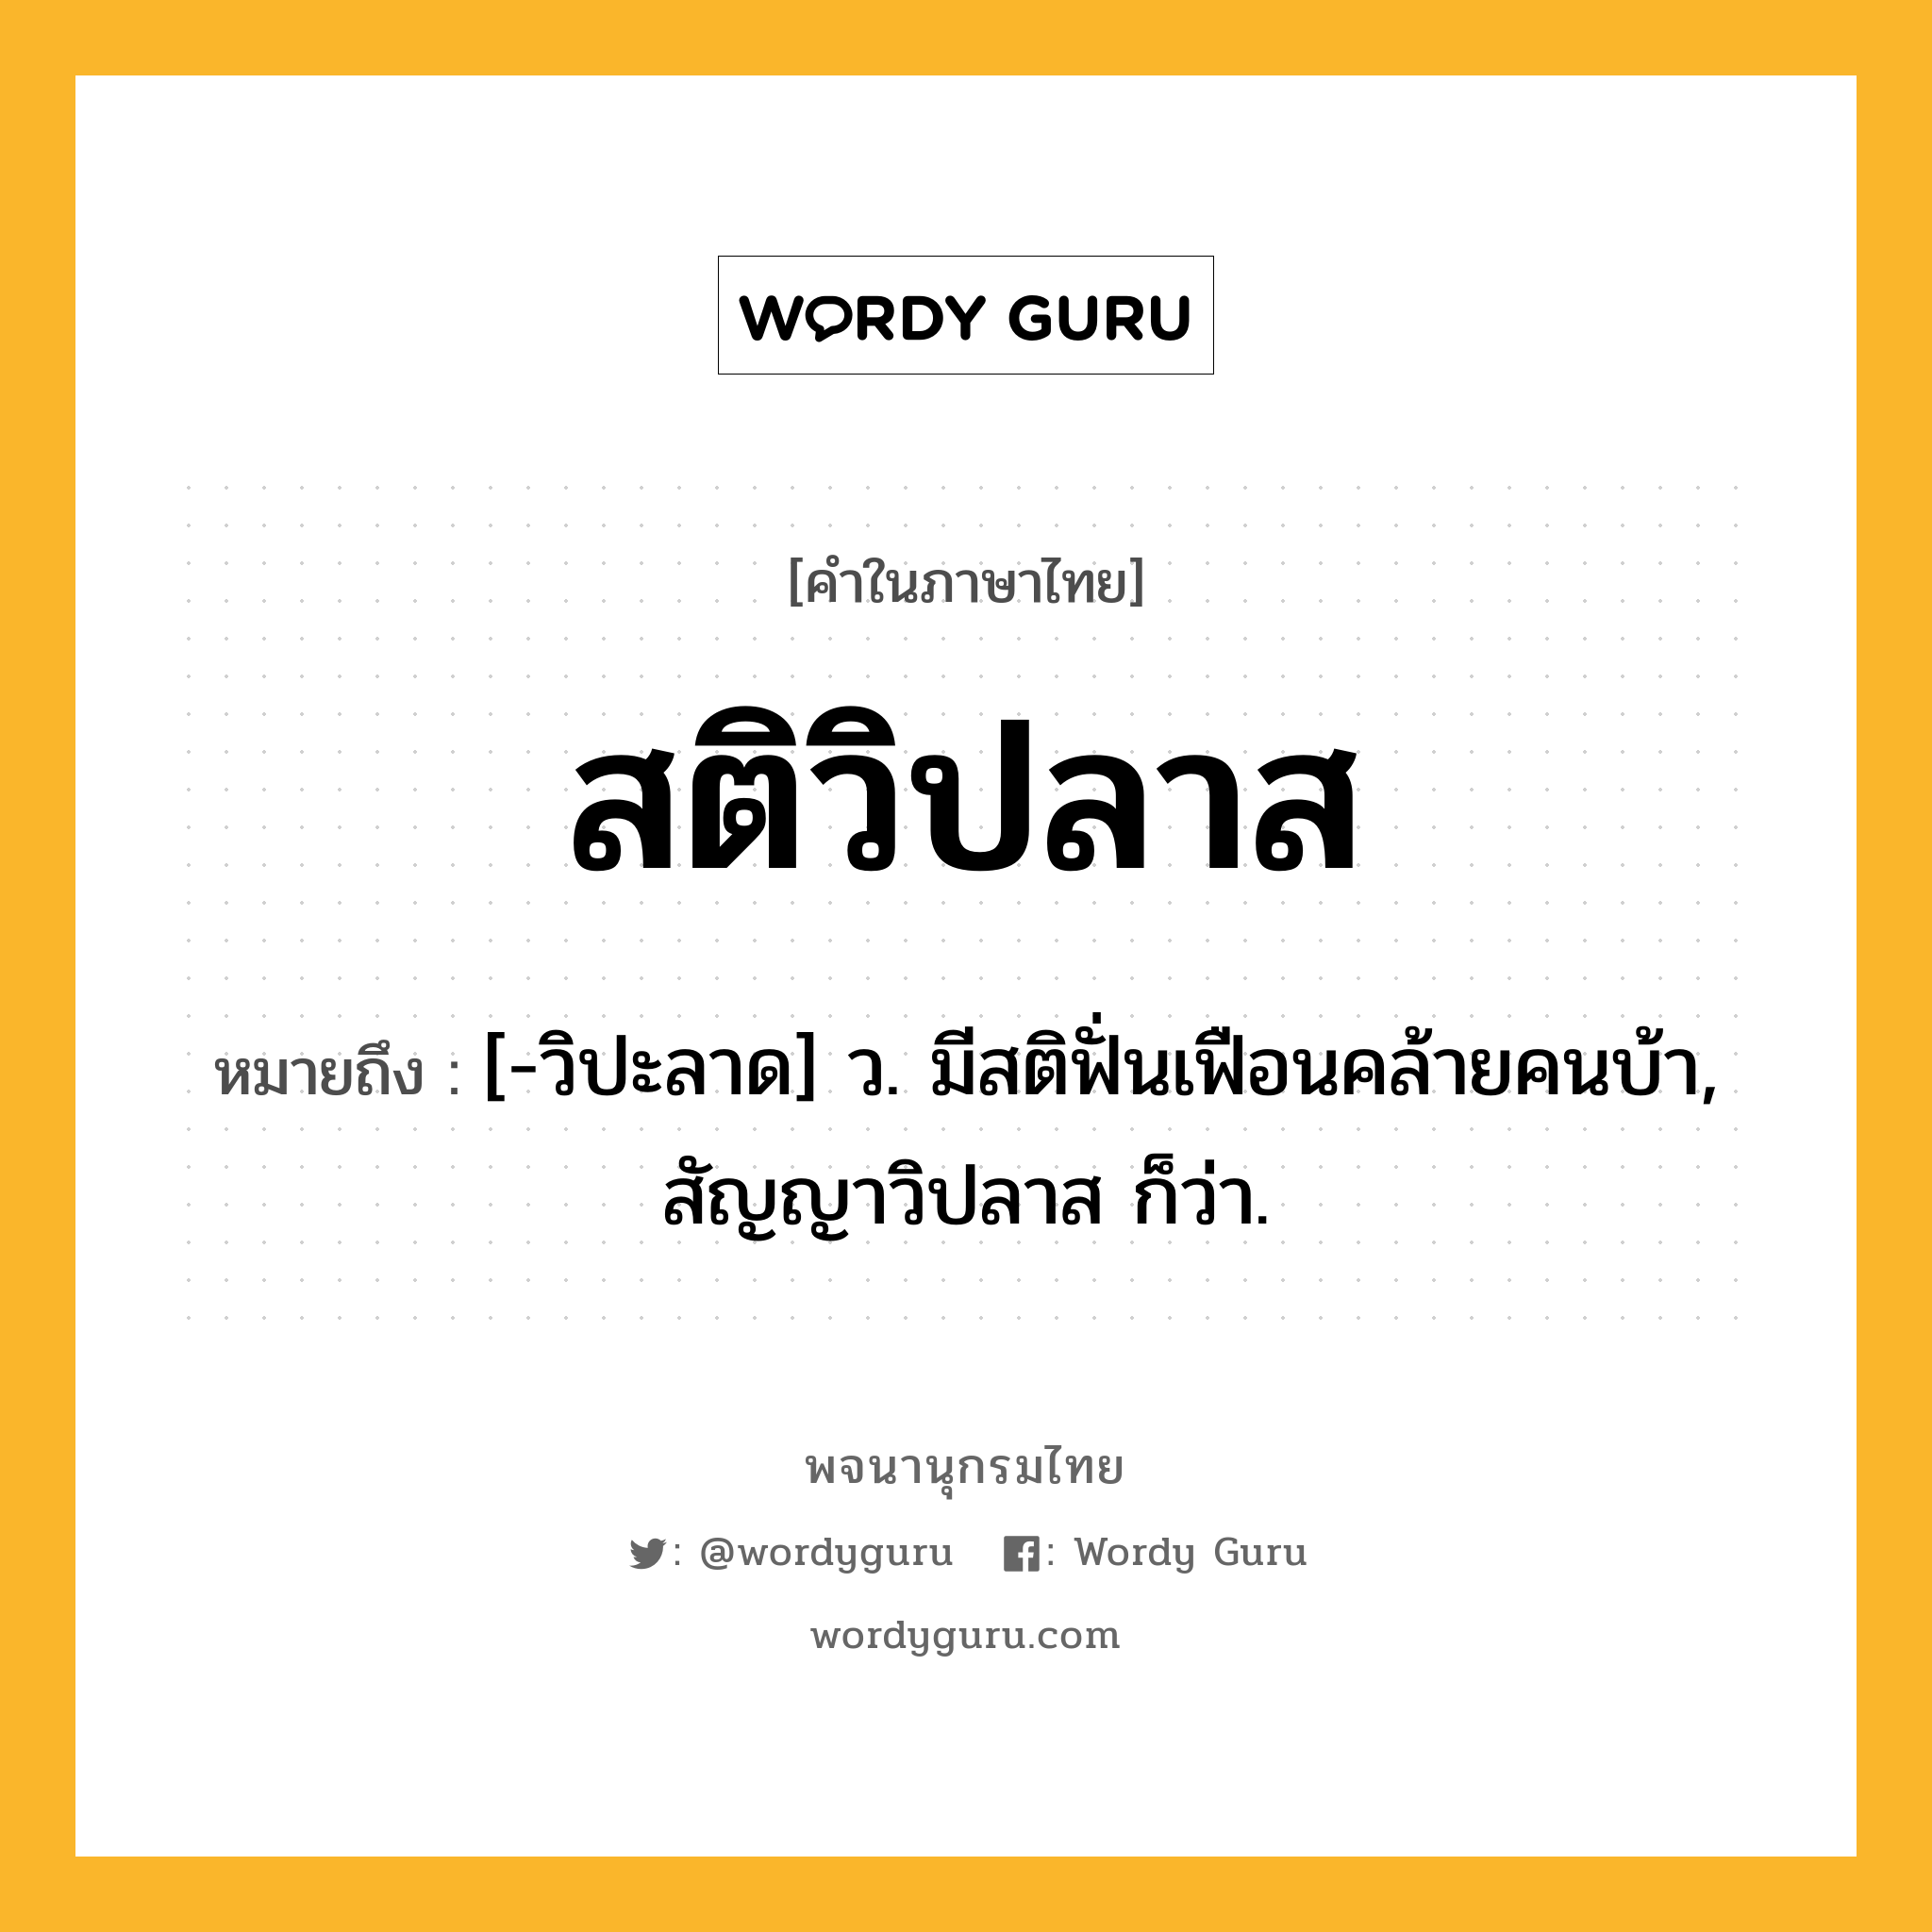 สติวิปลาส ความหมาย หมายถึงอะไร?, คำในภาษาไทย สติวิปลาส หมายถึง [-วิปะลาด] ว. มีสติฟั่นเฟือนคล้ายคนบ้า, สัญญาวิปลาส ก็ว่า.